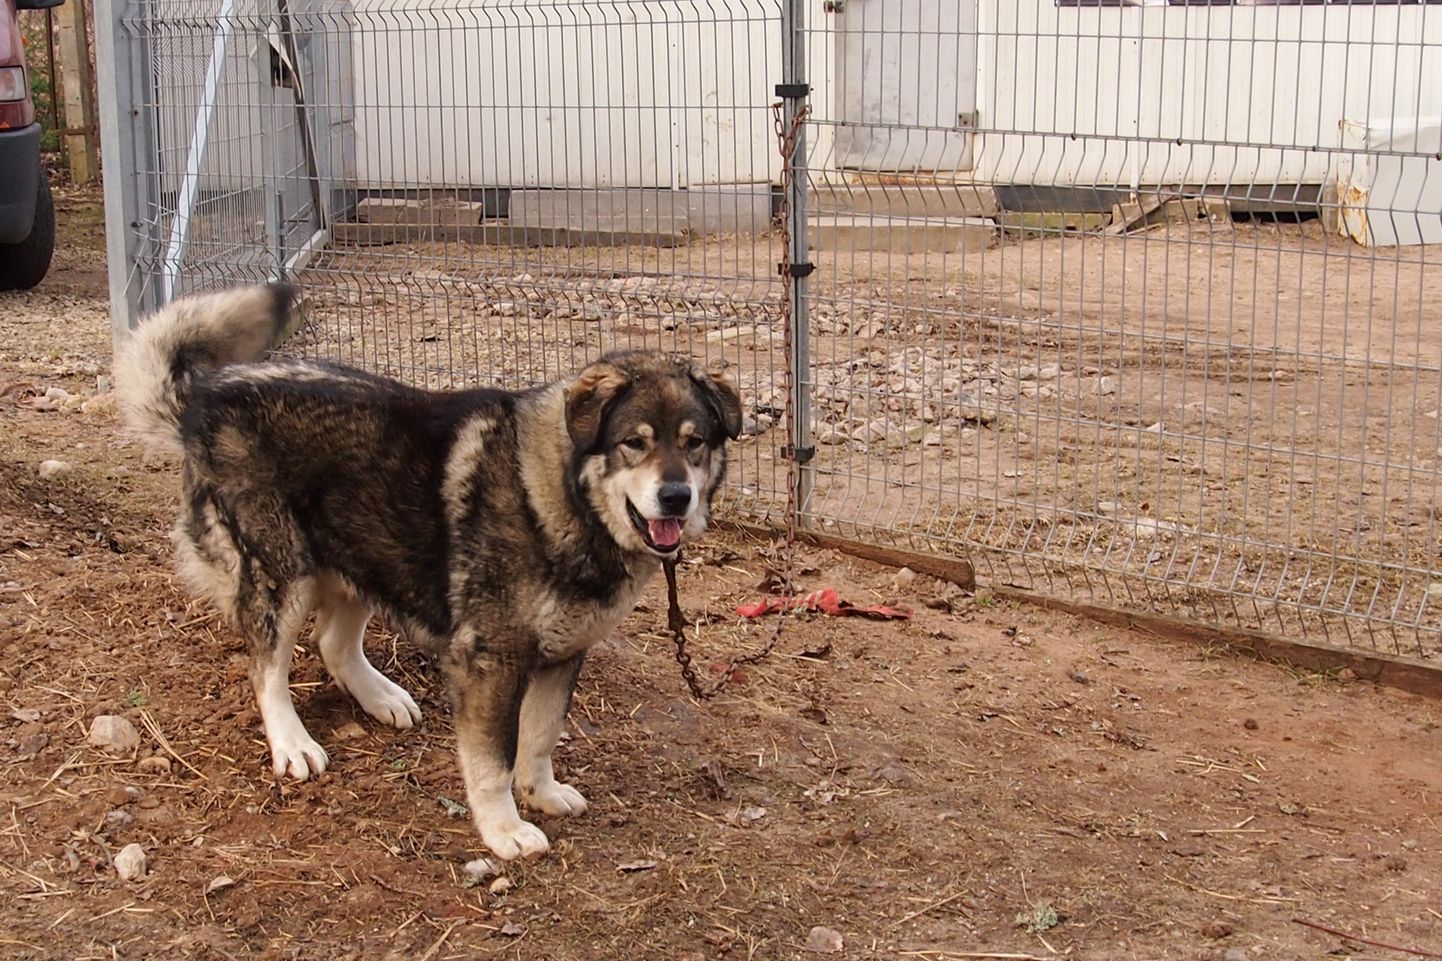 Reede hommikul leidsid Valga varjupaiga töötajad ketiga aia külge kinnitatud suure koera, kelle omanikku üritab varjupaik nüüd linnakodanike abil leida.